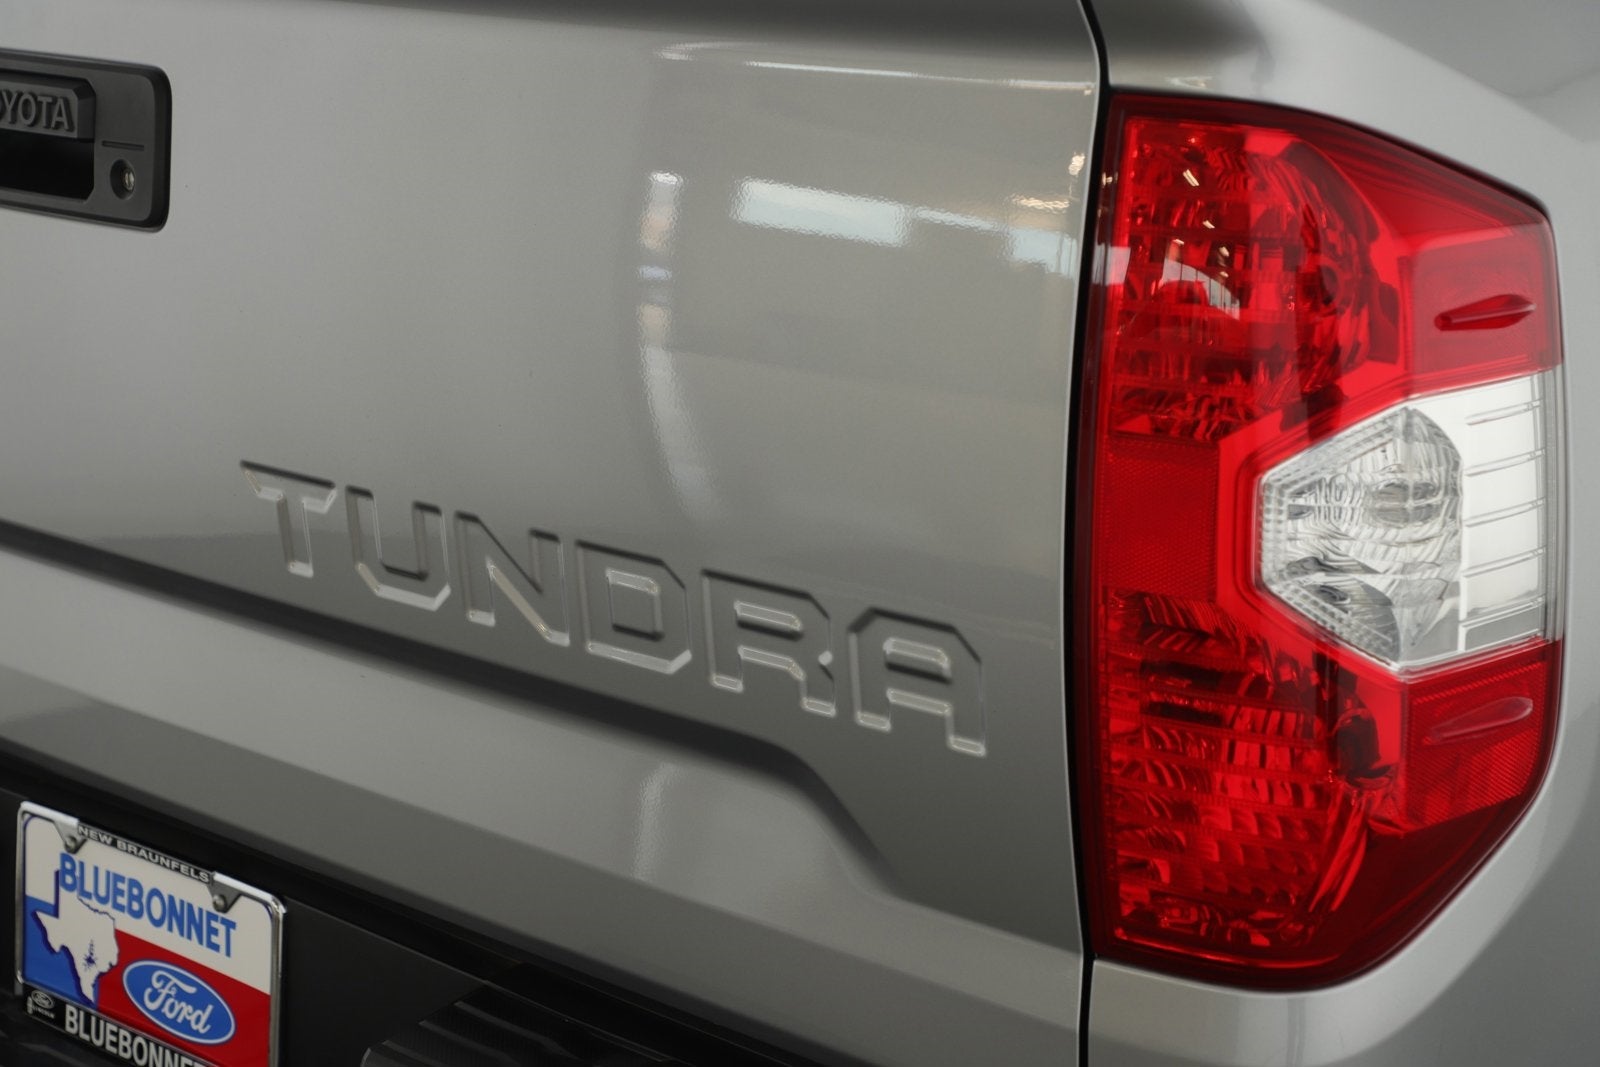 2016 Toyota Tundra 2WD Truck SR5